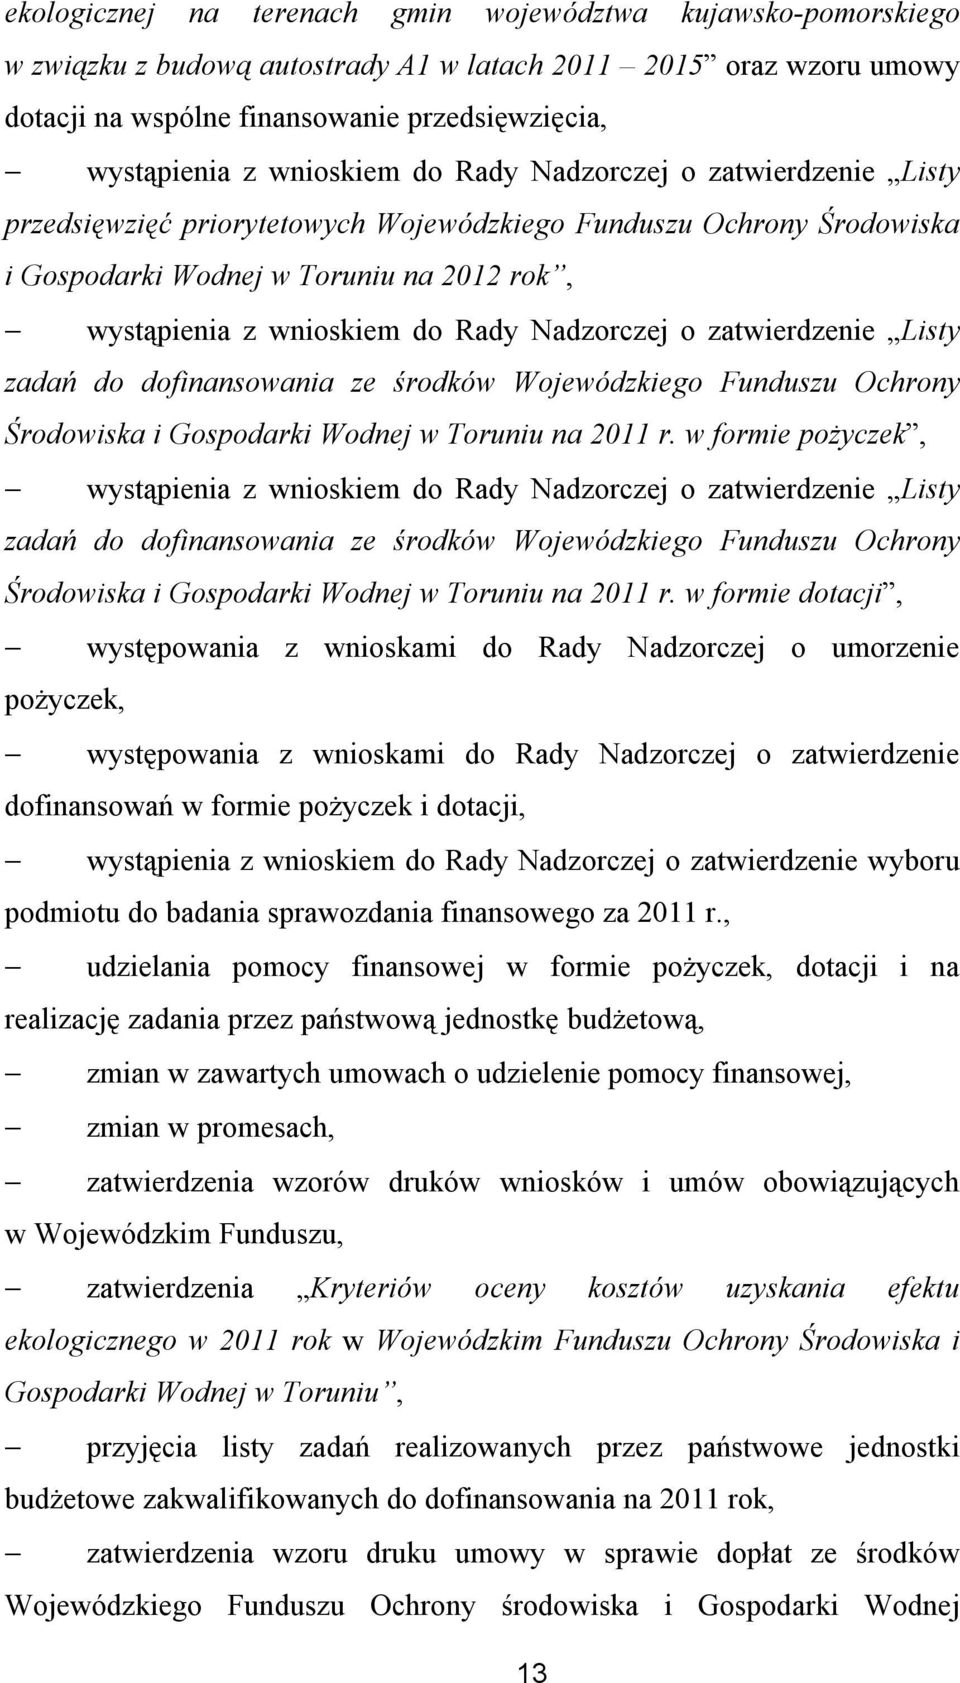 Nadzorczej o zatwierdzenie Listy zadań do dofinansowania ze środków Wojewódzkiego Funduszu Ochrony Środowiska i Gospodarki Wodnej w Toruniu na 2011 r.